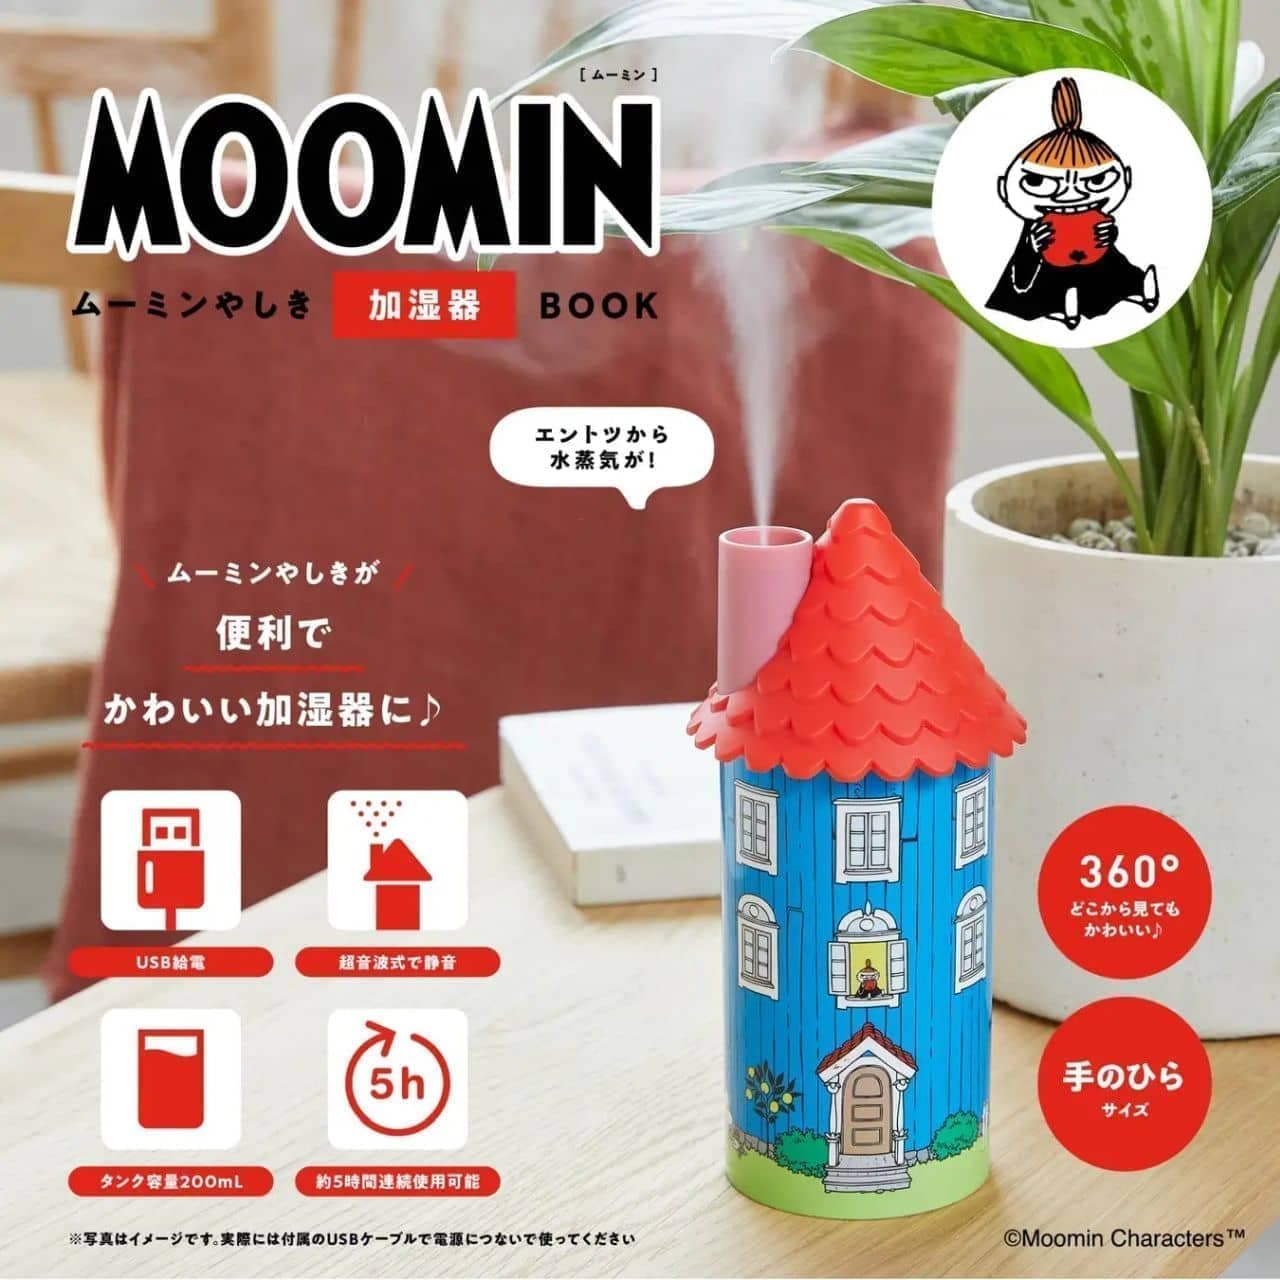 MOOMIN Moomin Yashiki Humidifier Book" by Takarajimasya, Inc.